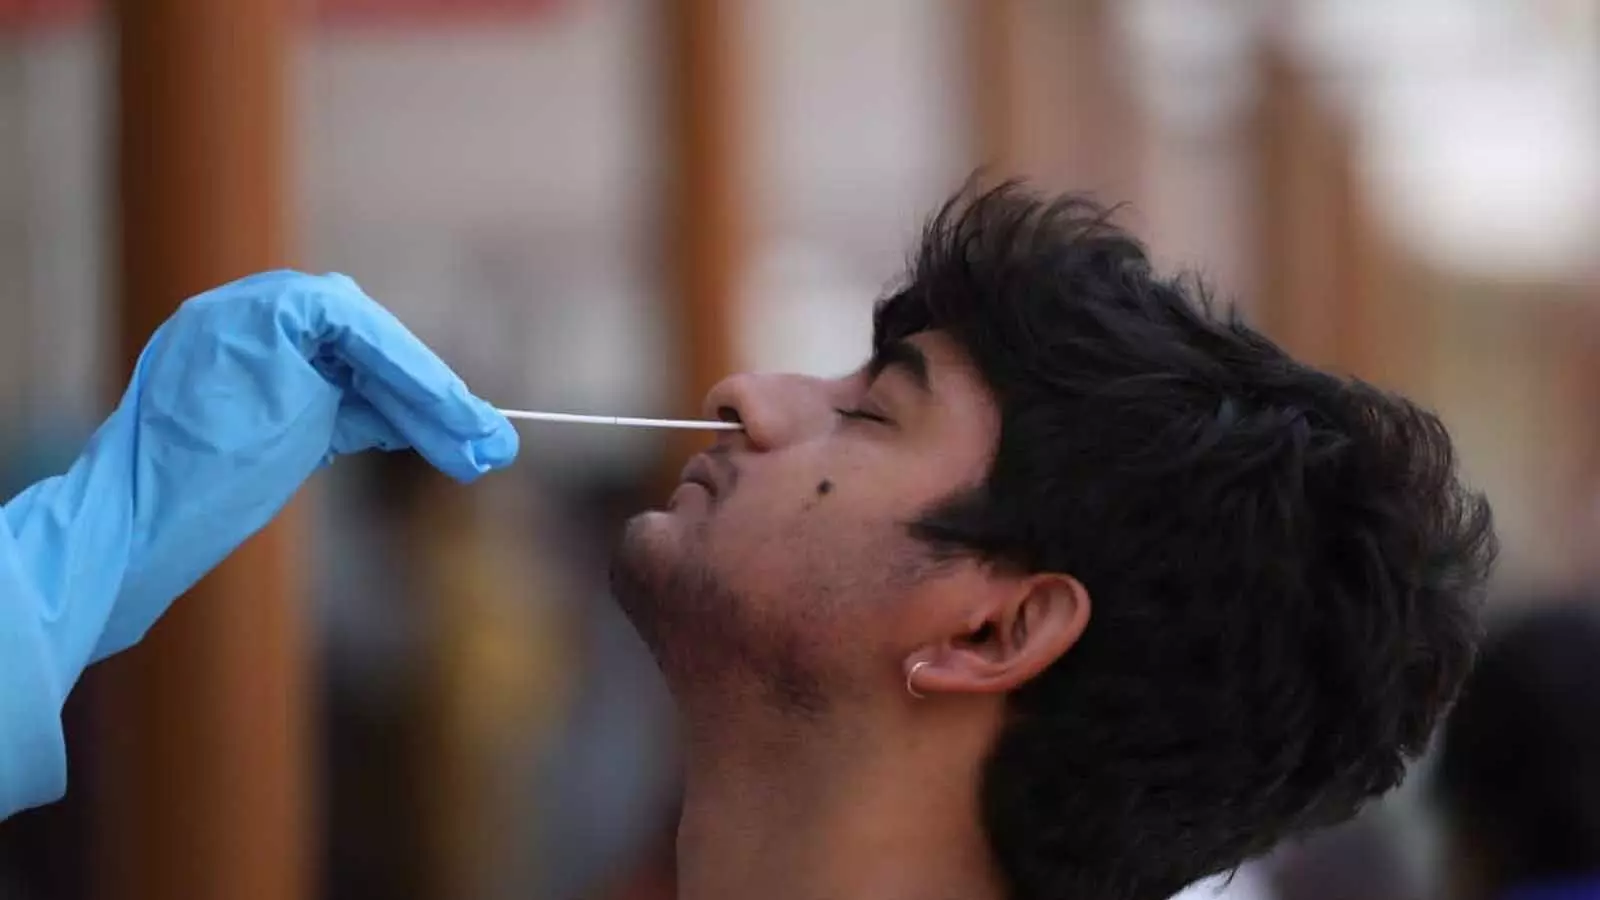 Coronavirus: भारत में नहीं आएगी कोरोना की तीसरी लहर, वैज्ञानिकों ने दी खुशखबरी